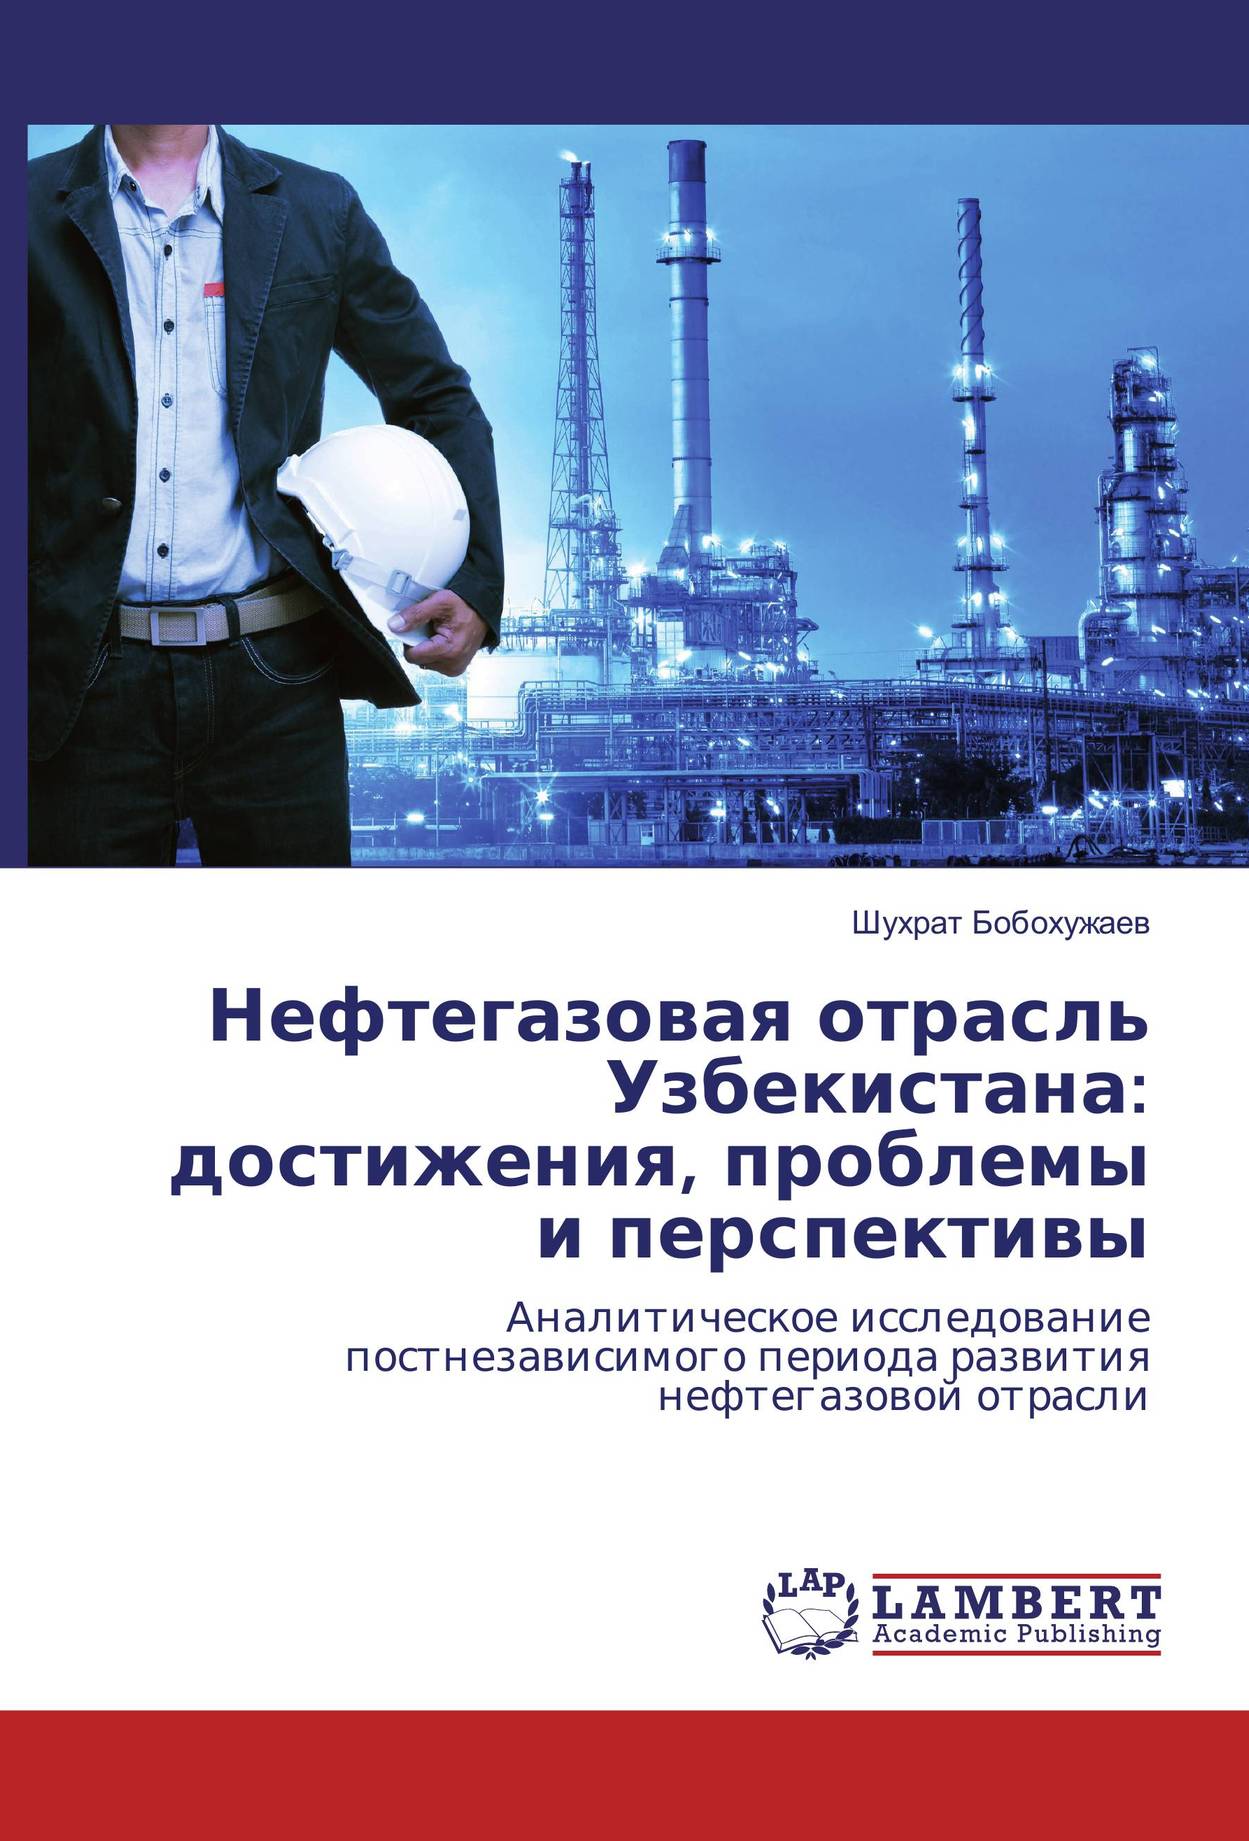 Нефтегазовая отрасль Узбекистана:  достижения, проблемы и перспективы. Аналитическое исследование постнезависимого периода развития